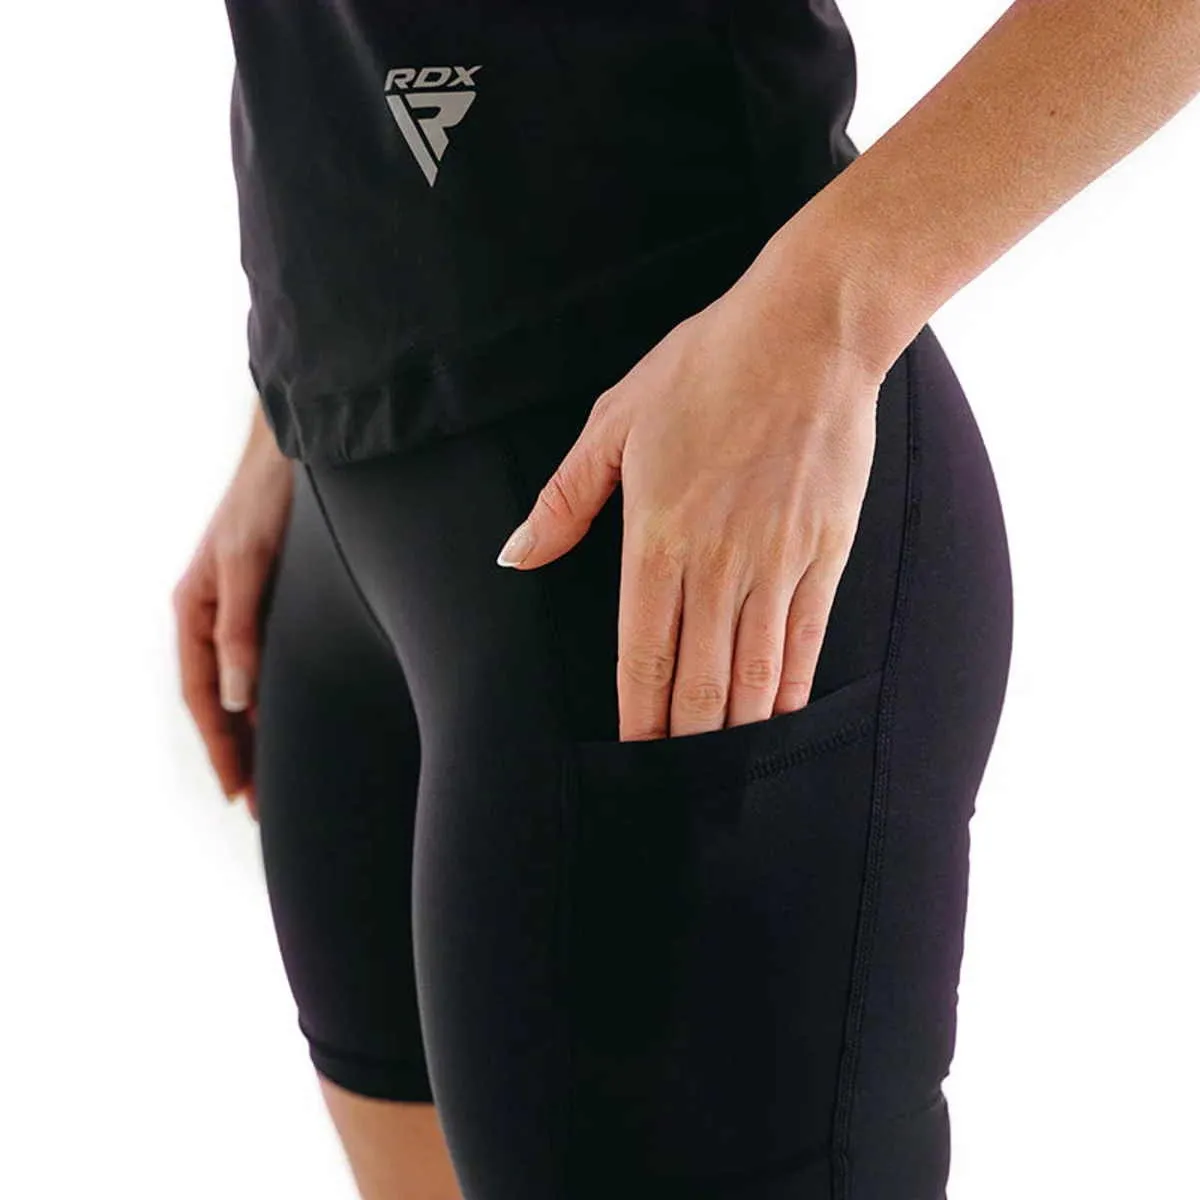 Damen Schwitz Shorts W1 Schwarz RDX Saunahose